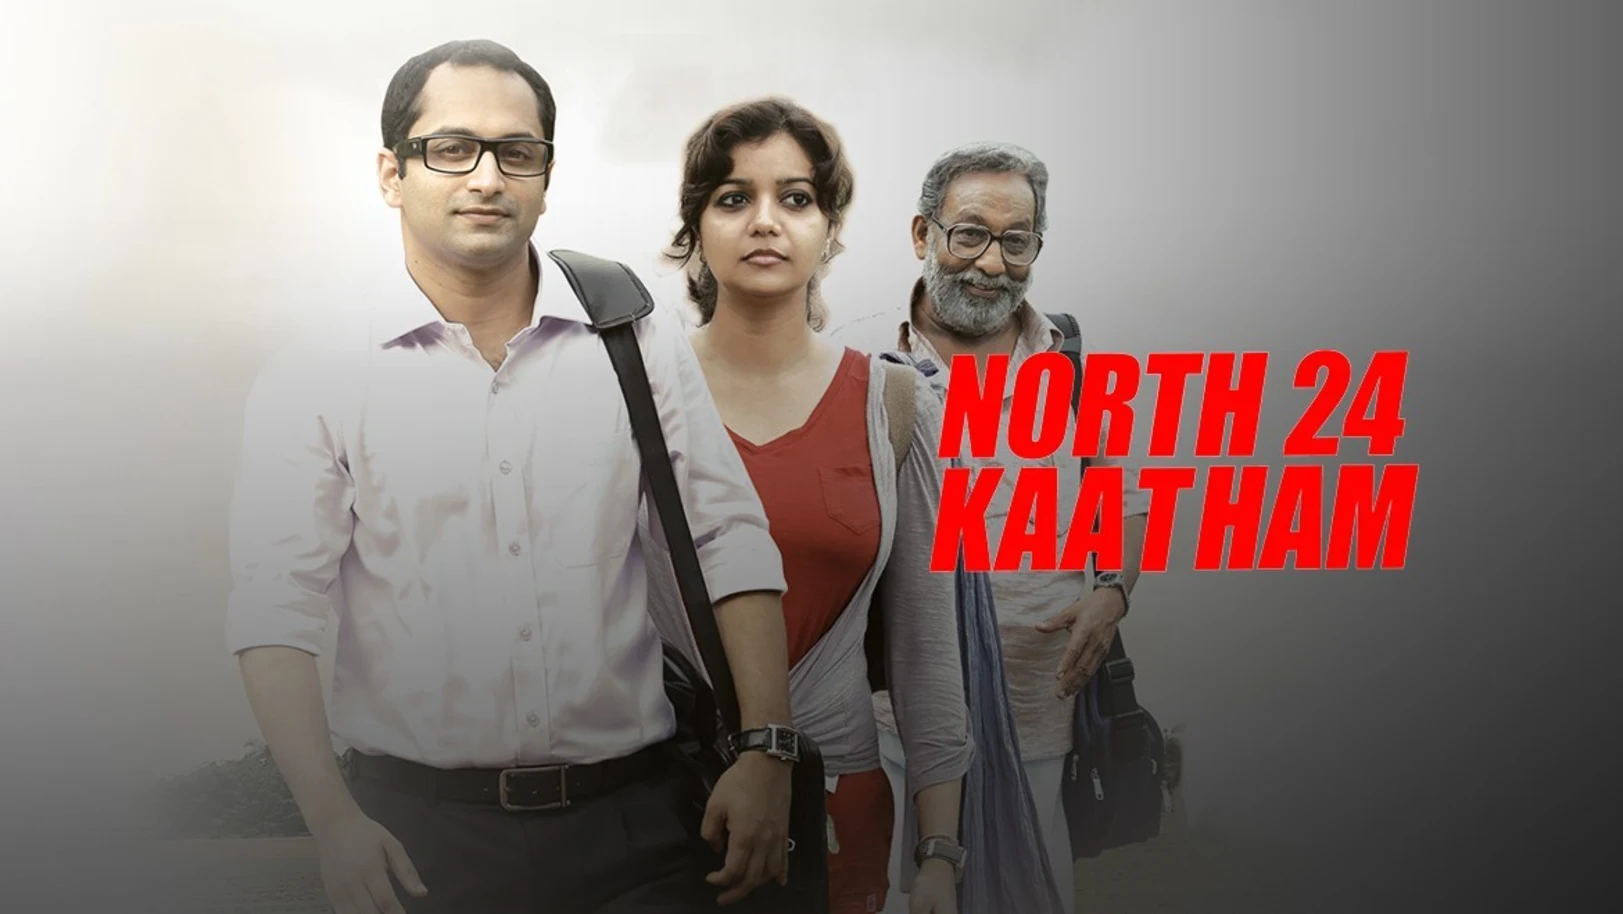 North 24 Kaatham Movie